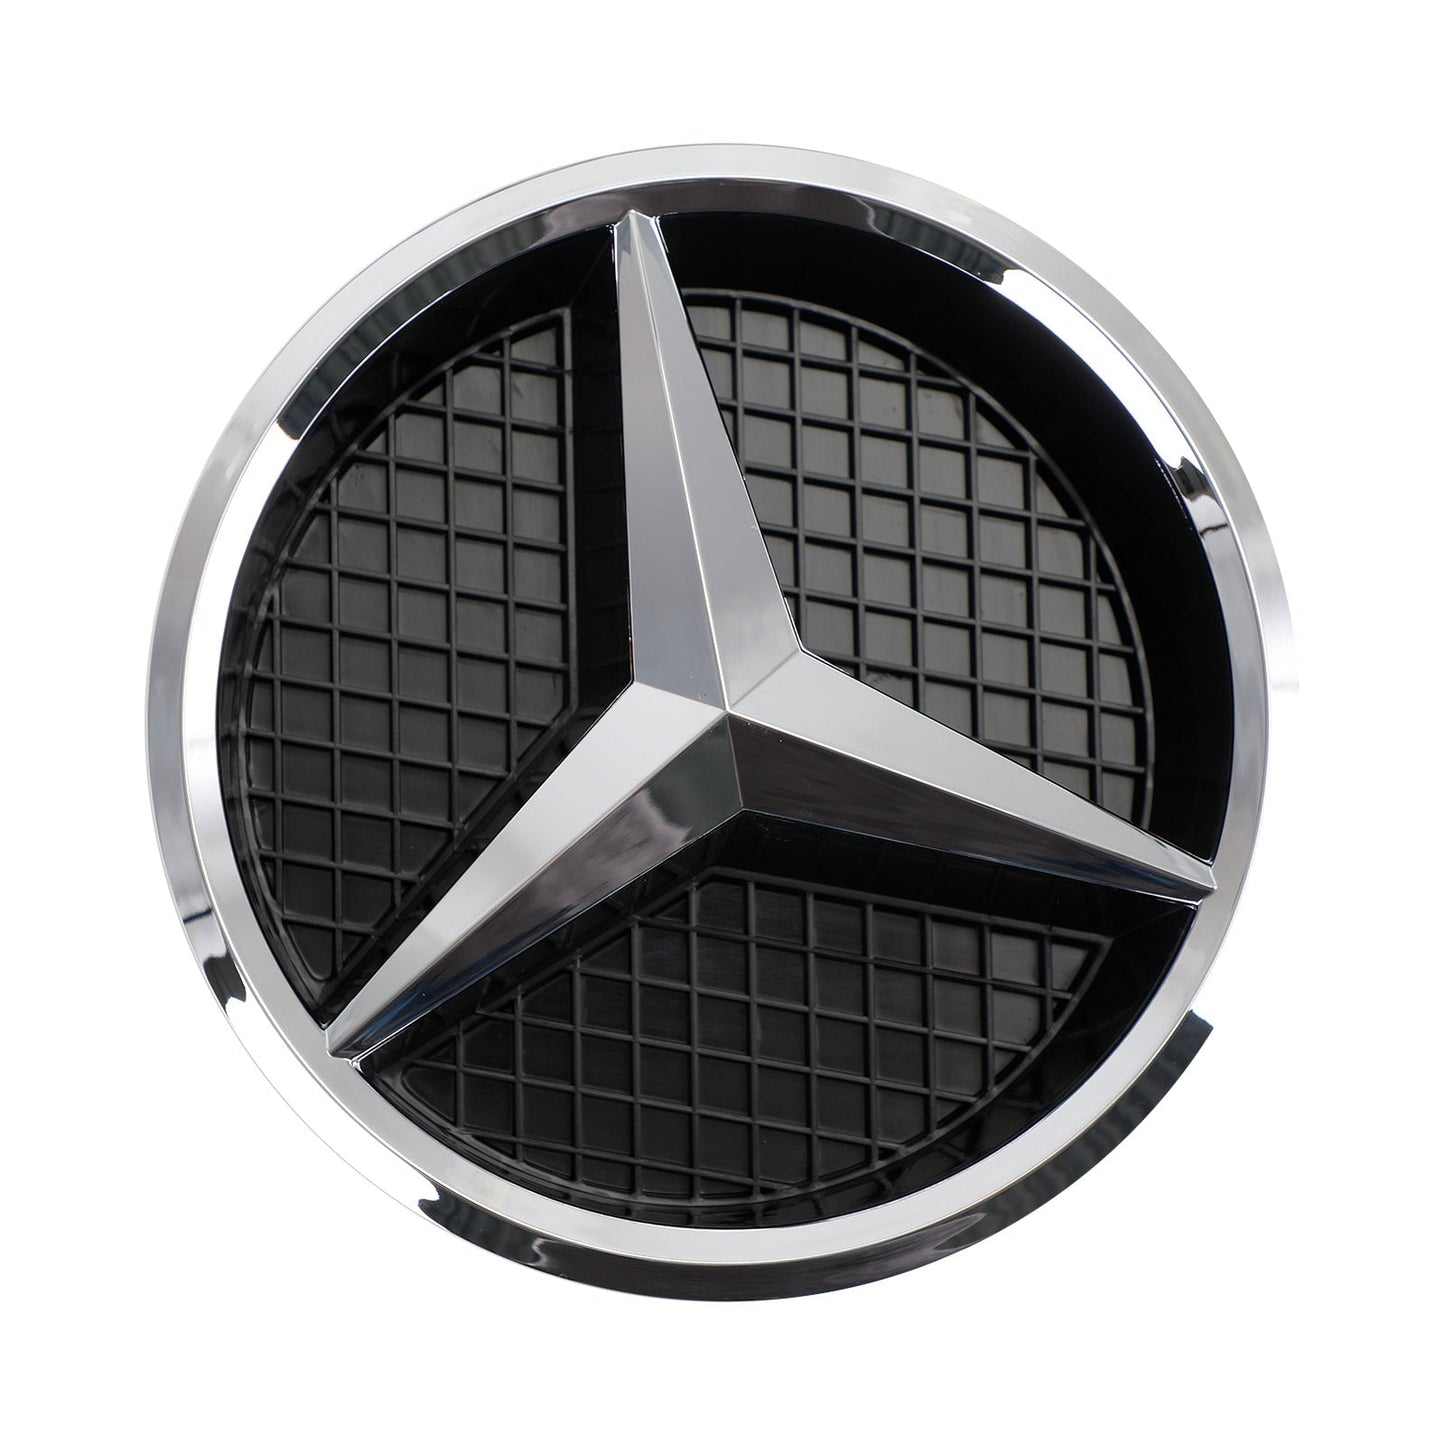 2012-2015 Benz GLK300 Base Sport 2048802983 Griglia paraurti anteriore Griglia diamante